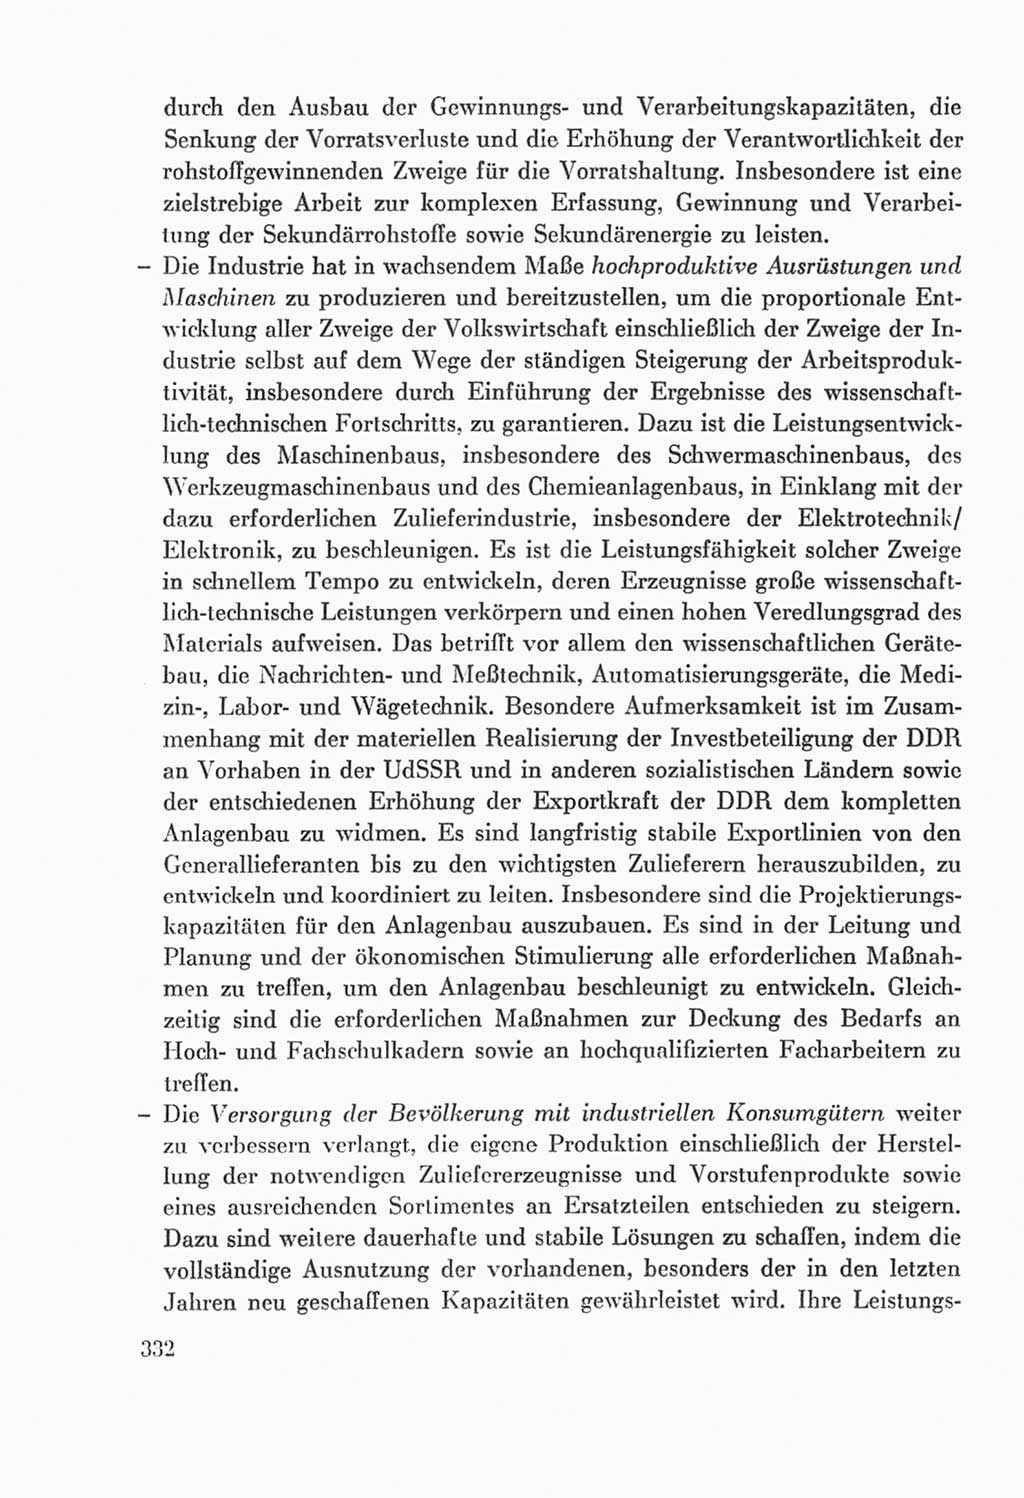 Protokoll der Verhandlungen des Ⅸ. Parteitages der Sozialistischen Einheitspartei Deutschlands (SED) [Deutsche Demokratische Republik (DDR)] 1976, Band 2, Seite 332 (Prot. Verh. Ⅸ. PT SED DDR 1976, Bd. 2, S. 332)